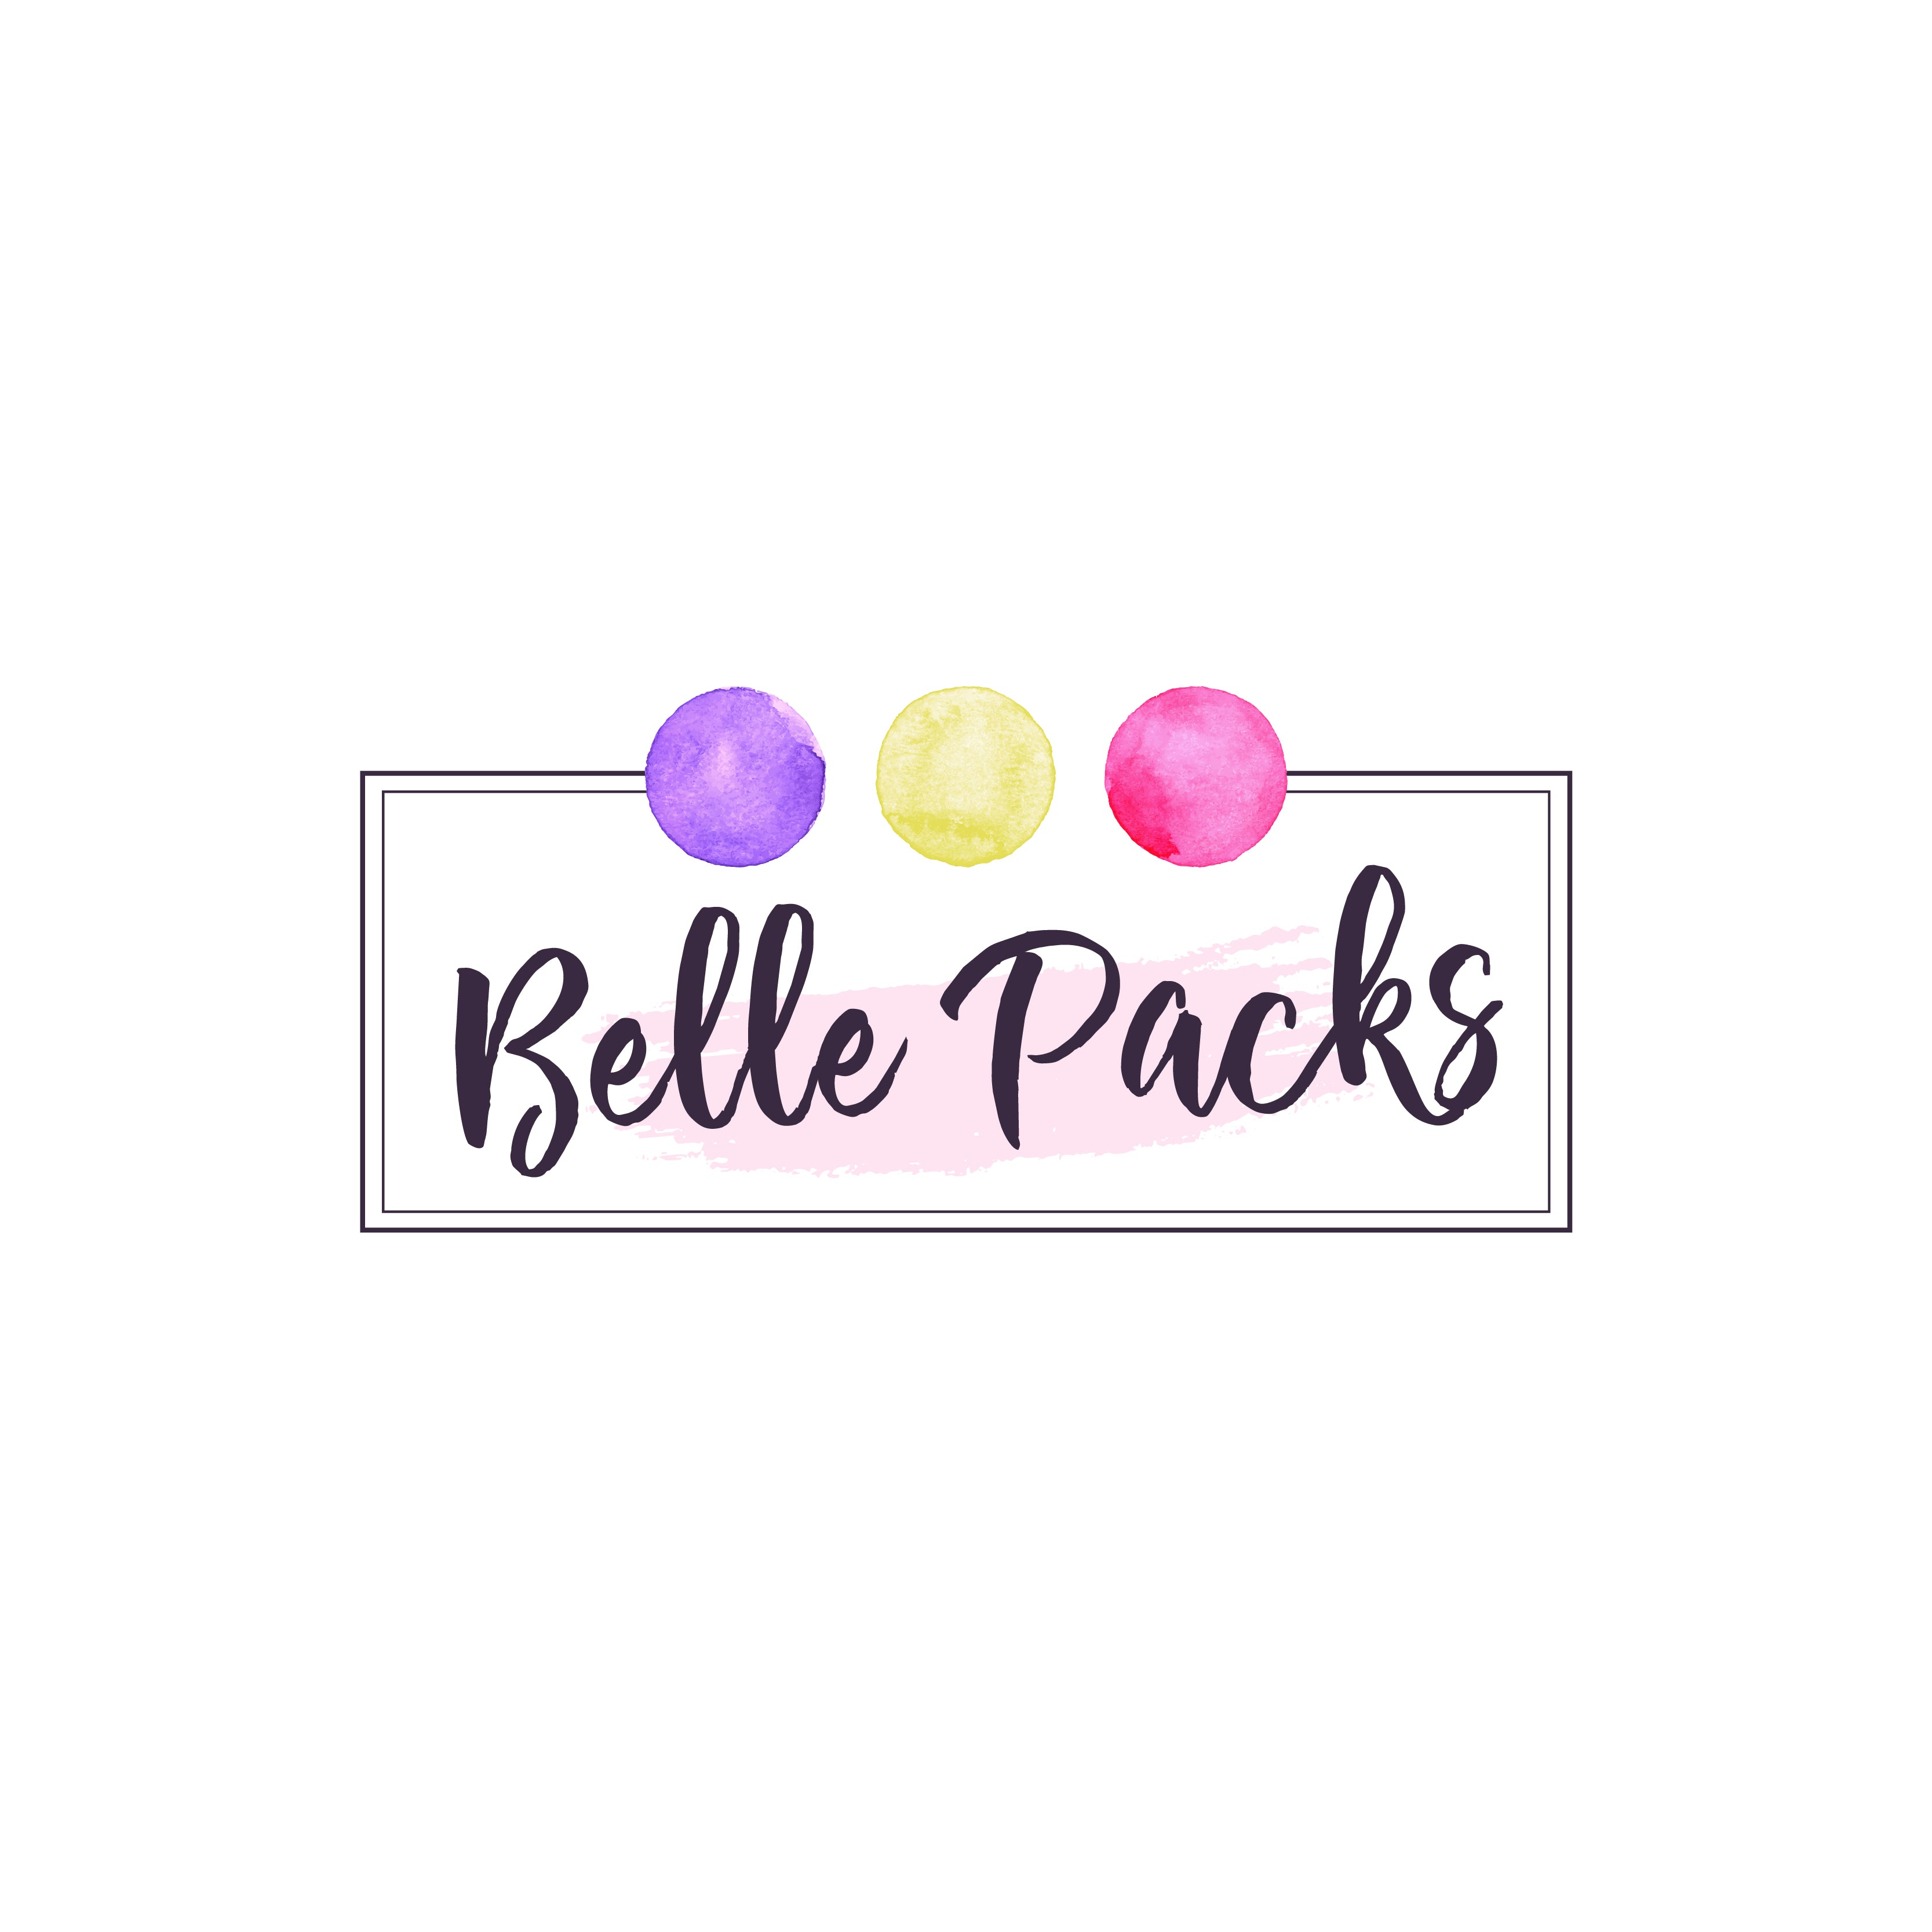 Belle Packs